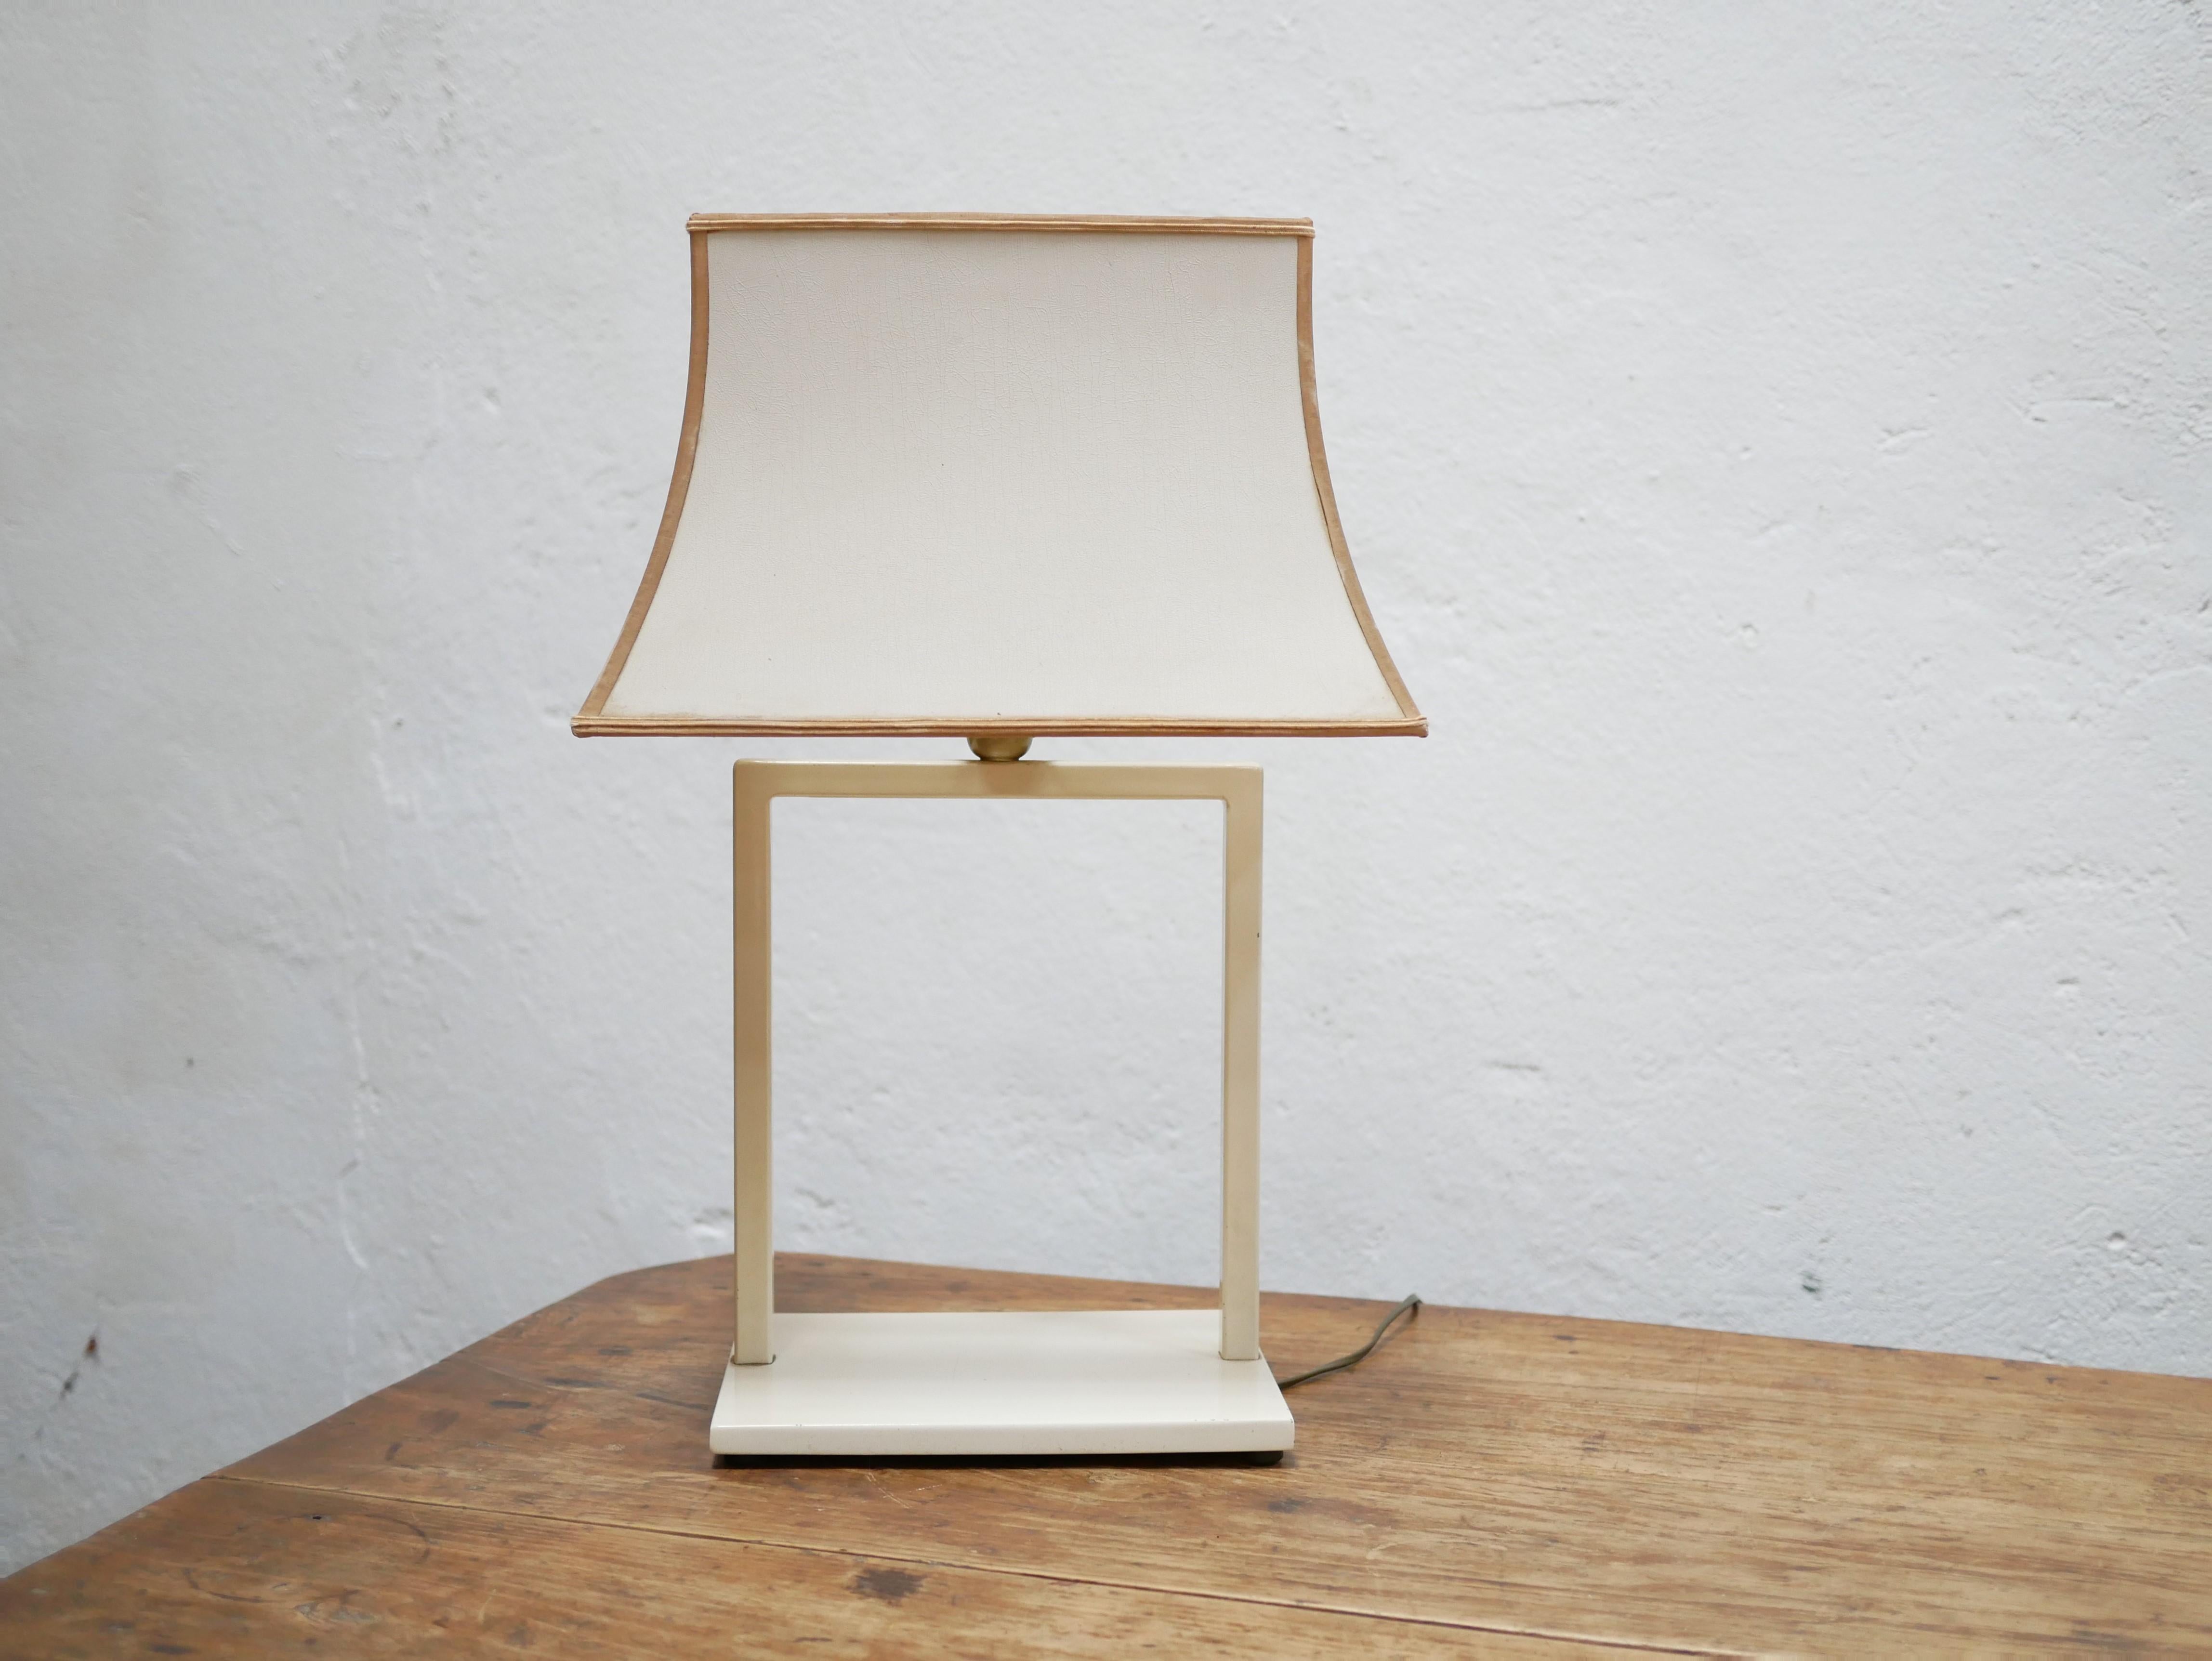 Lampe, entworfen von Phanera Editions in den 70er Jahren.

Seinem Design mangelt es nicht an Charakter und Eleganz. Ästhetisch, groß und funktionell, wird es ideal im Wohnzimmer, im Büro oder im Schlafzimmer für eine trendige und moderne Dekoration